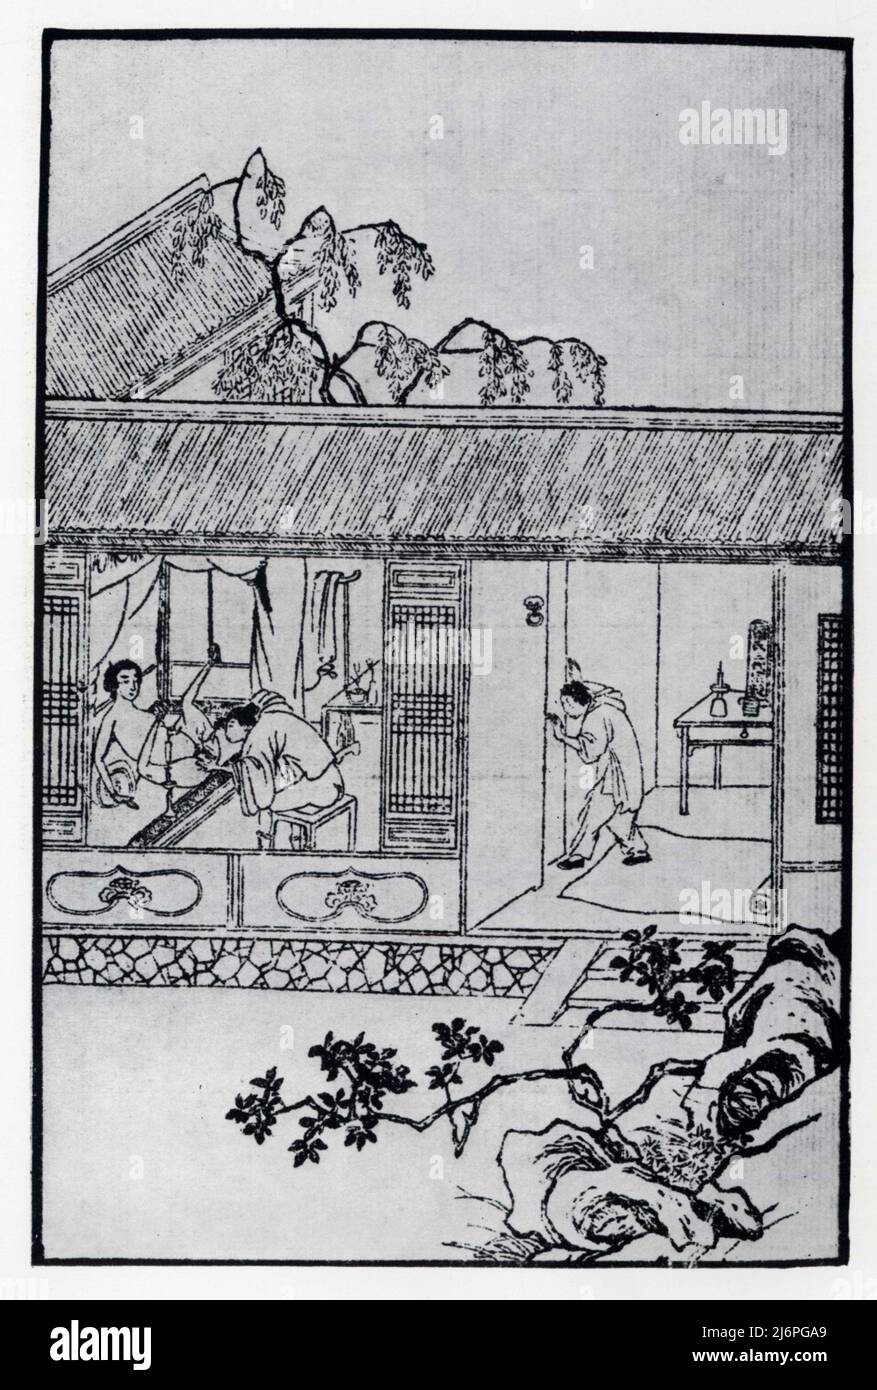 Mei. Pino P'ing Collection du palais des Mandchous à Chen-yang. Gravure sur bois. XVIe siècle Foto Stock